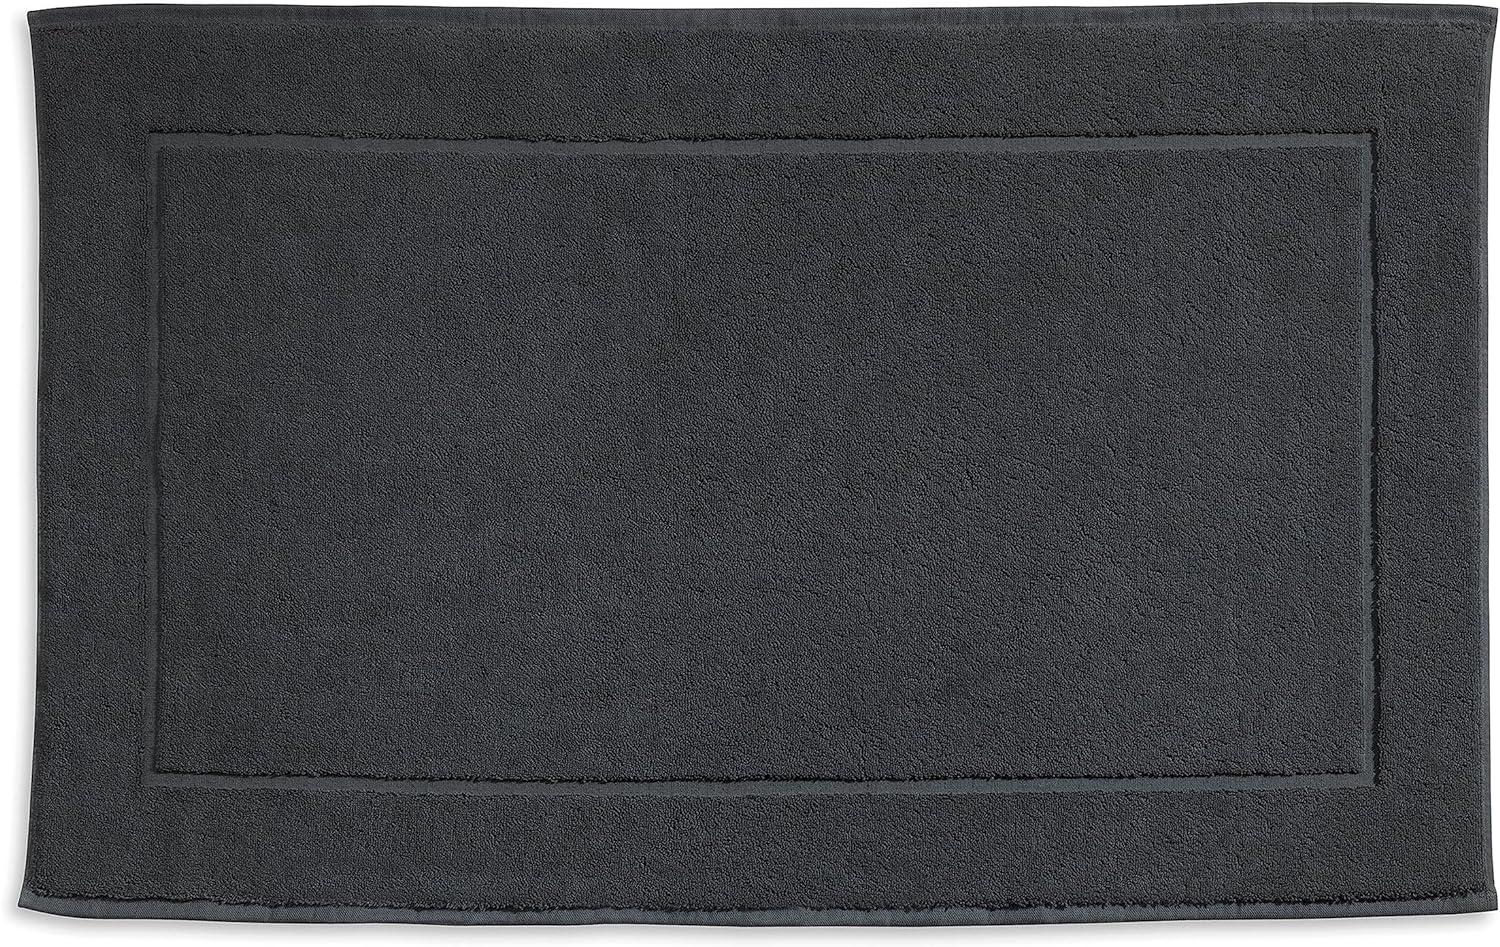 Kela Badvorleger Ladessa, 60 cm x 100 cm, 100% Baumwolle, Granitgrau, waschbar bei 60° C, für Fußbodenheizung geeignet, 23484 Bild 1